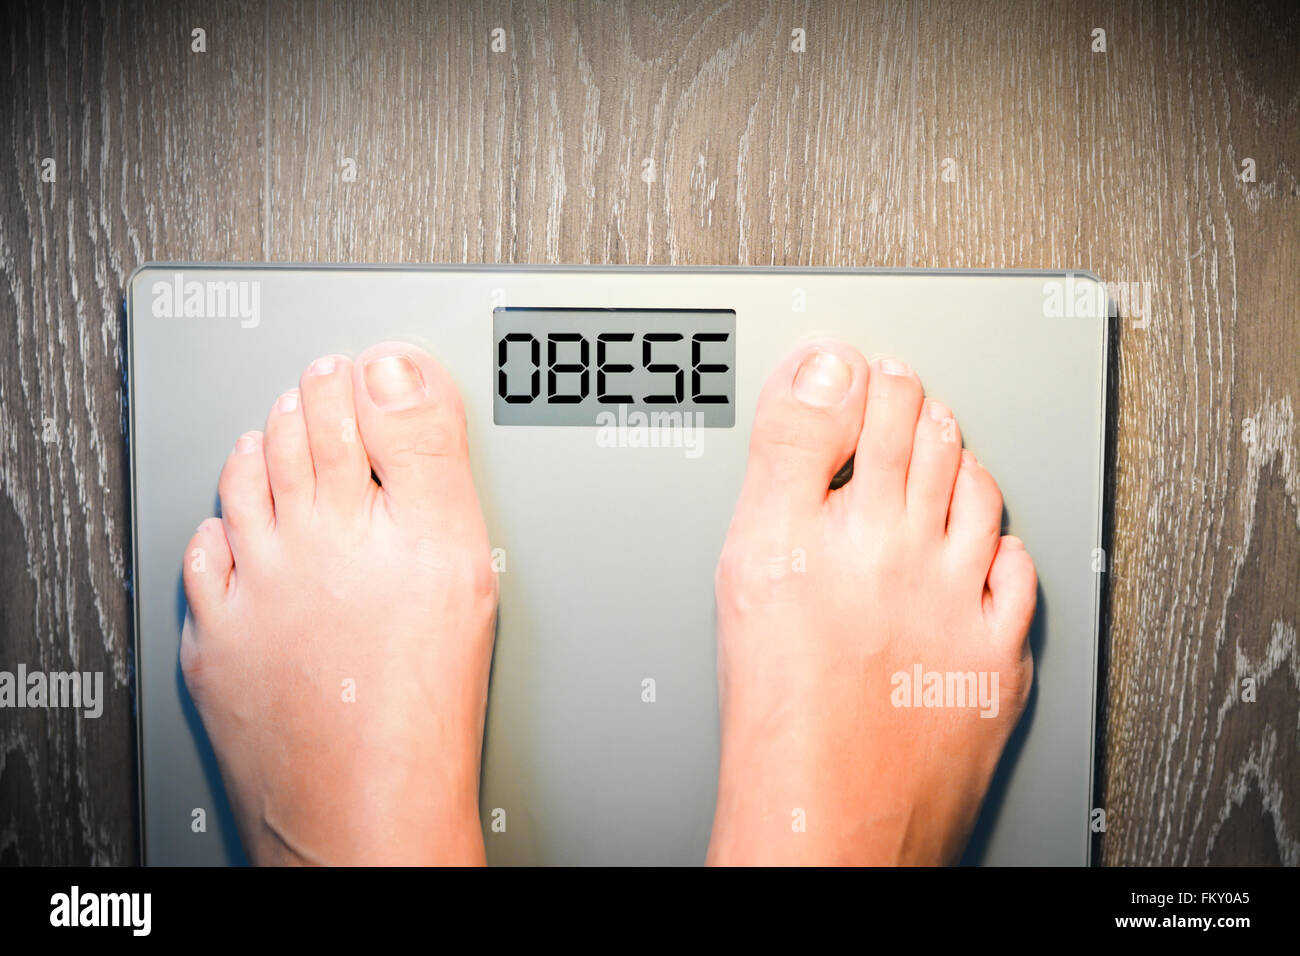 Perdre du poids concept avec personne sur une échelle mesurant le kilogrammes Banque D'Images